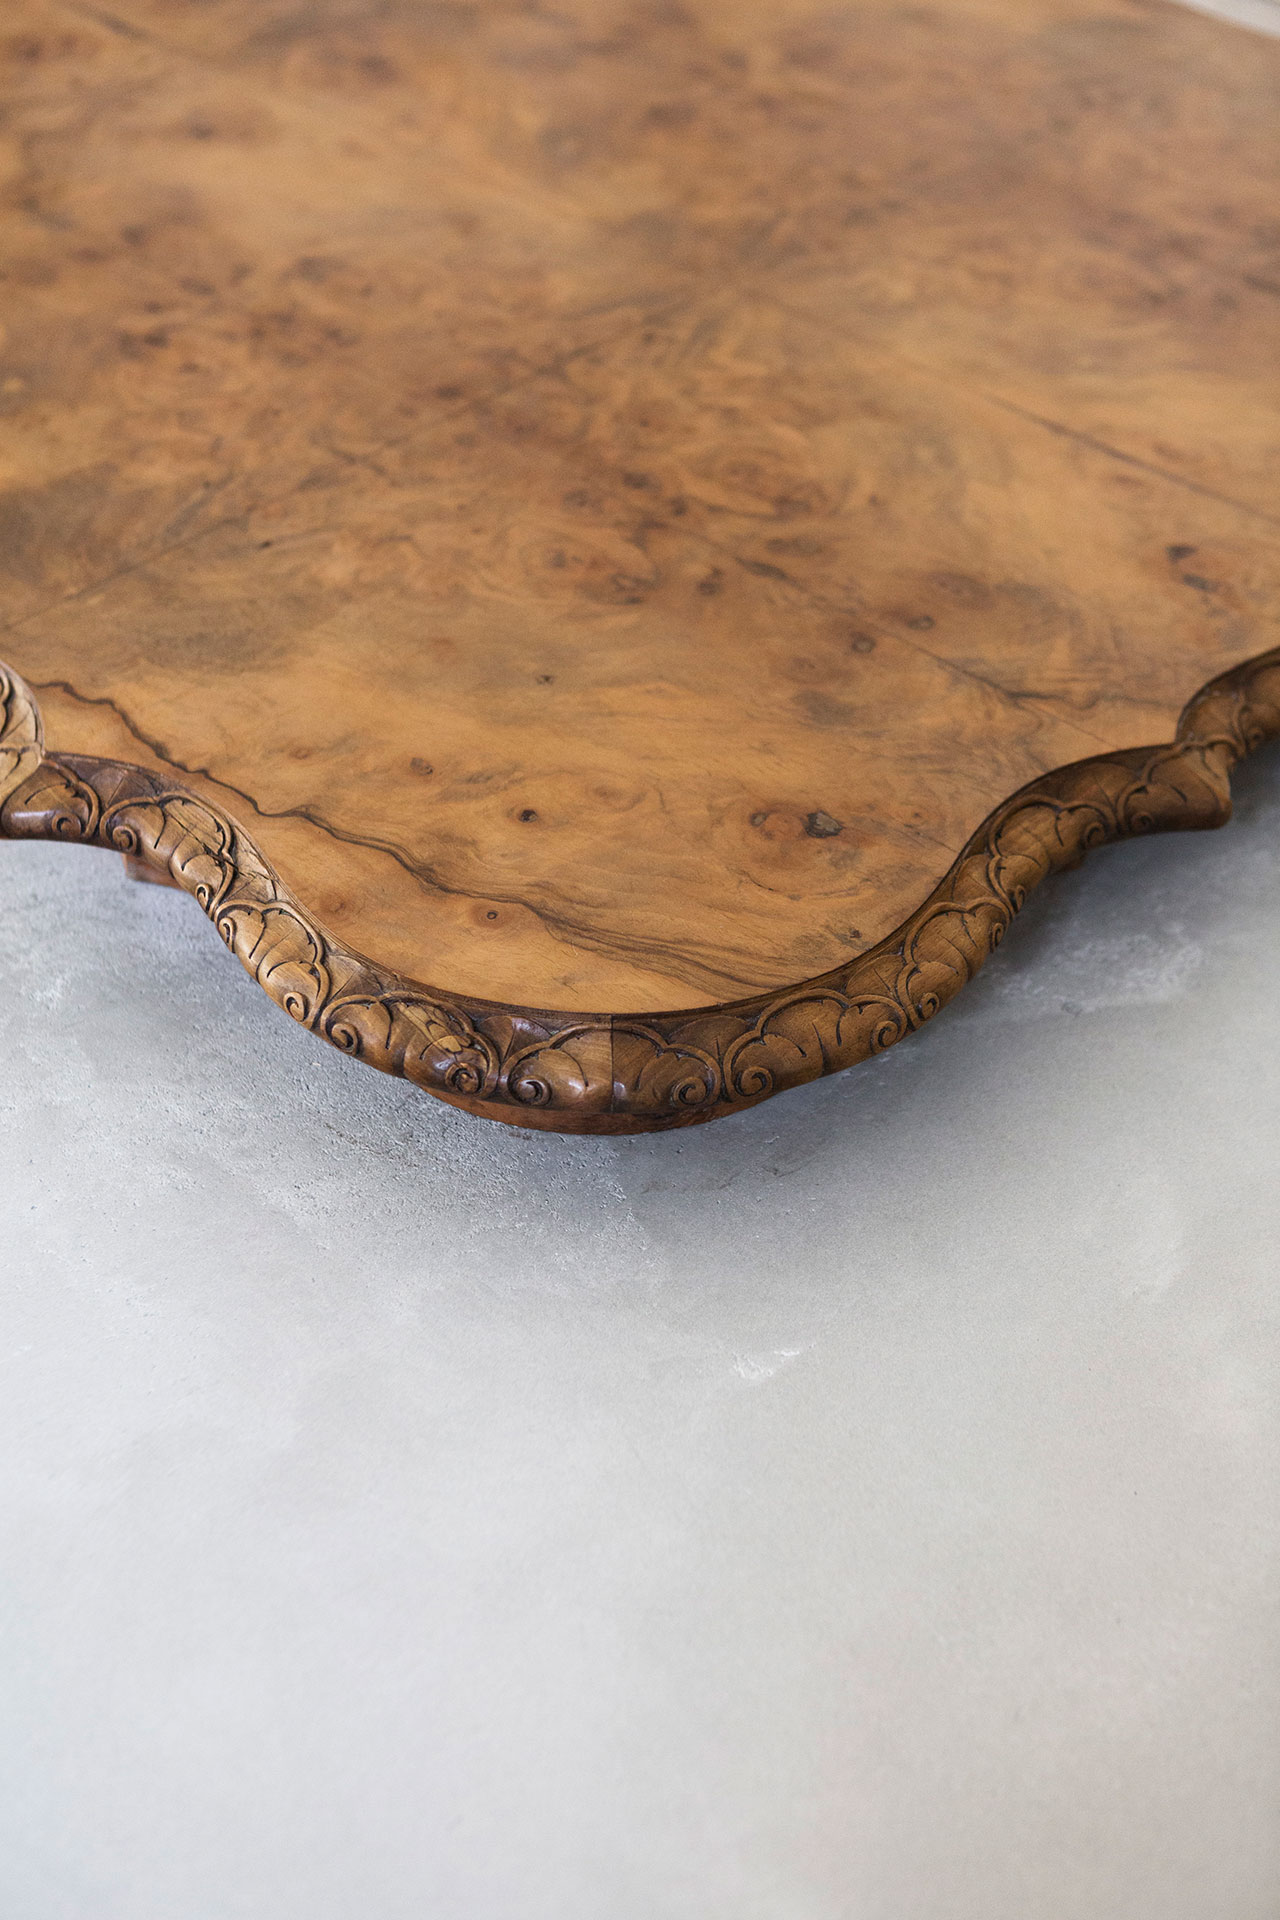 Nucleo (Piergiorgio Robino + Marzia Ricci), “Boolean” And  (Table), 2017. Concrete, vintage furniture, 204 x 142 x 80h cm. Unique piece. Photo by Studio Pepe Fotografia.